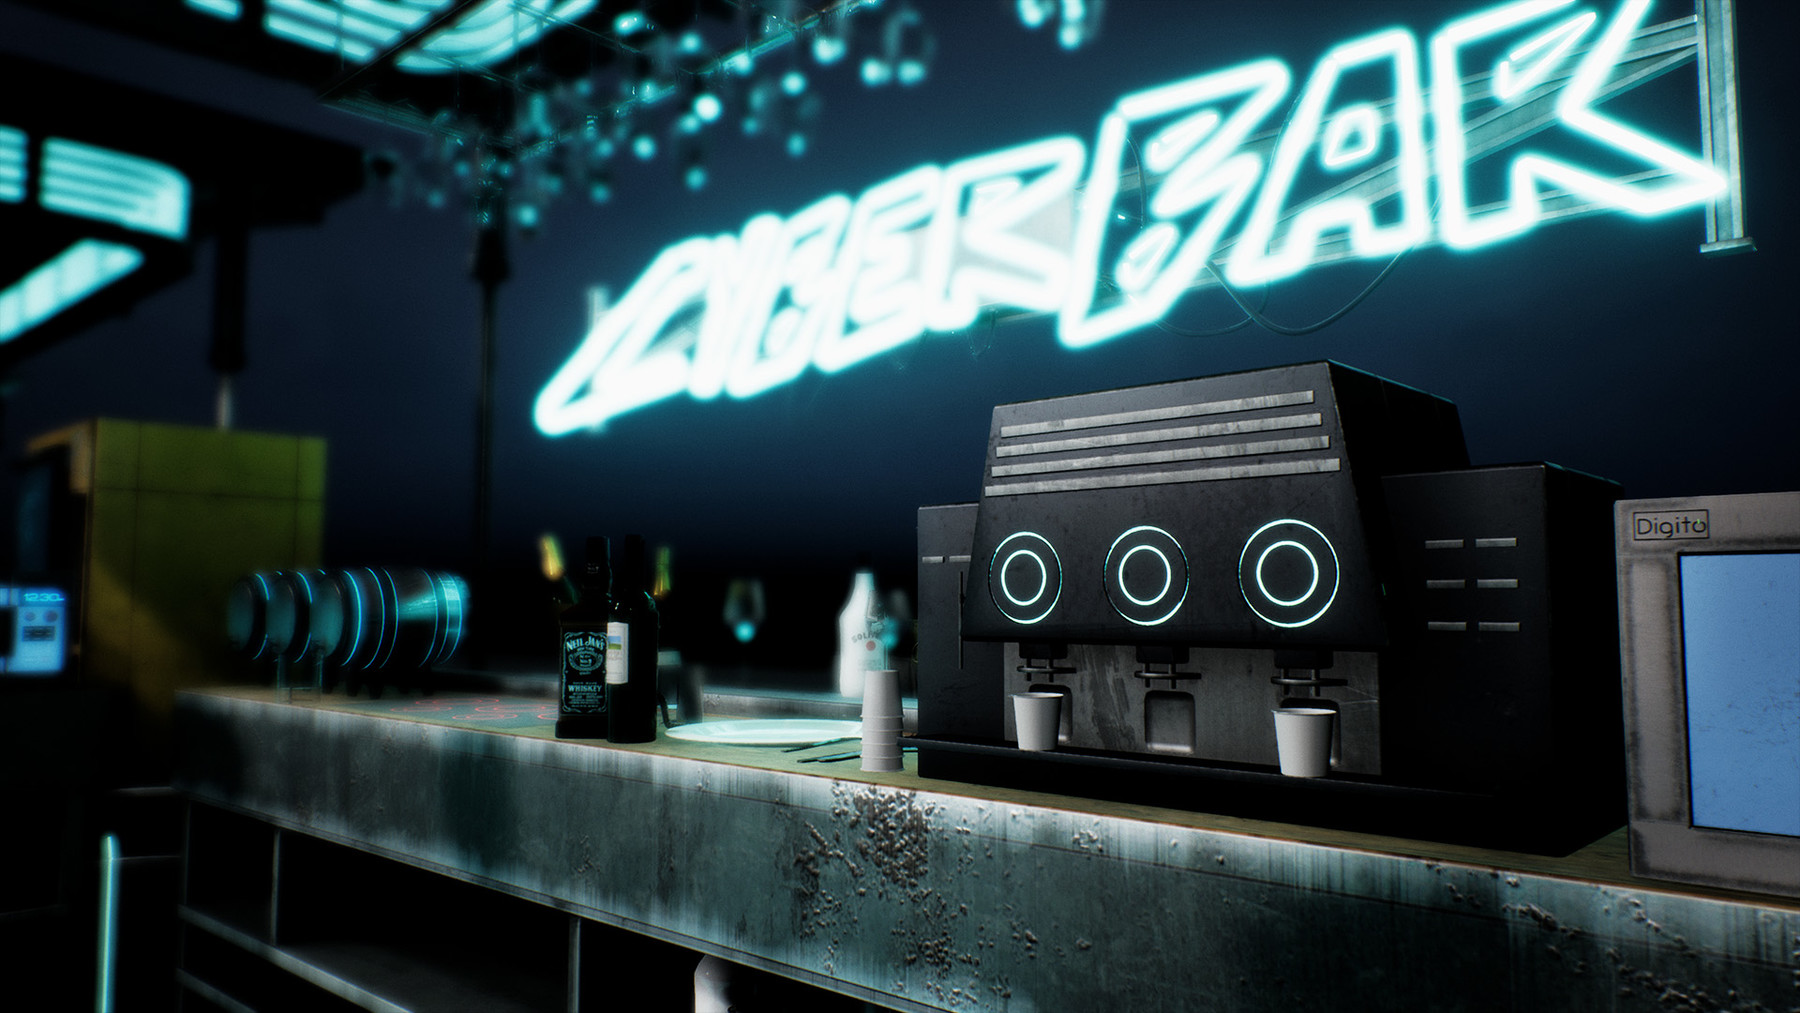 ArtStation - Cyberpunk Bar / Buffet Asset Set in Unreal Engine | Game ...